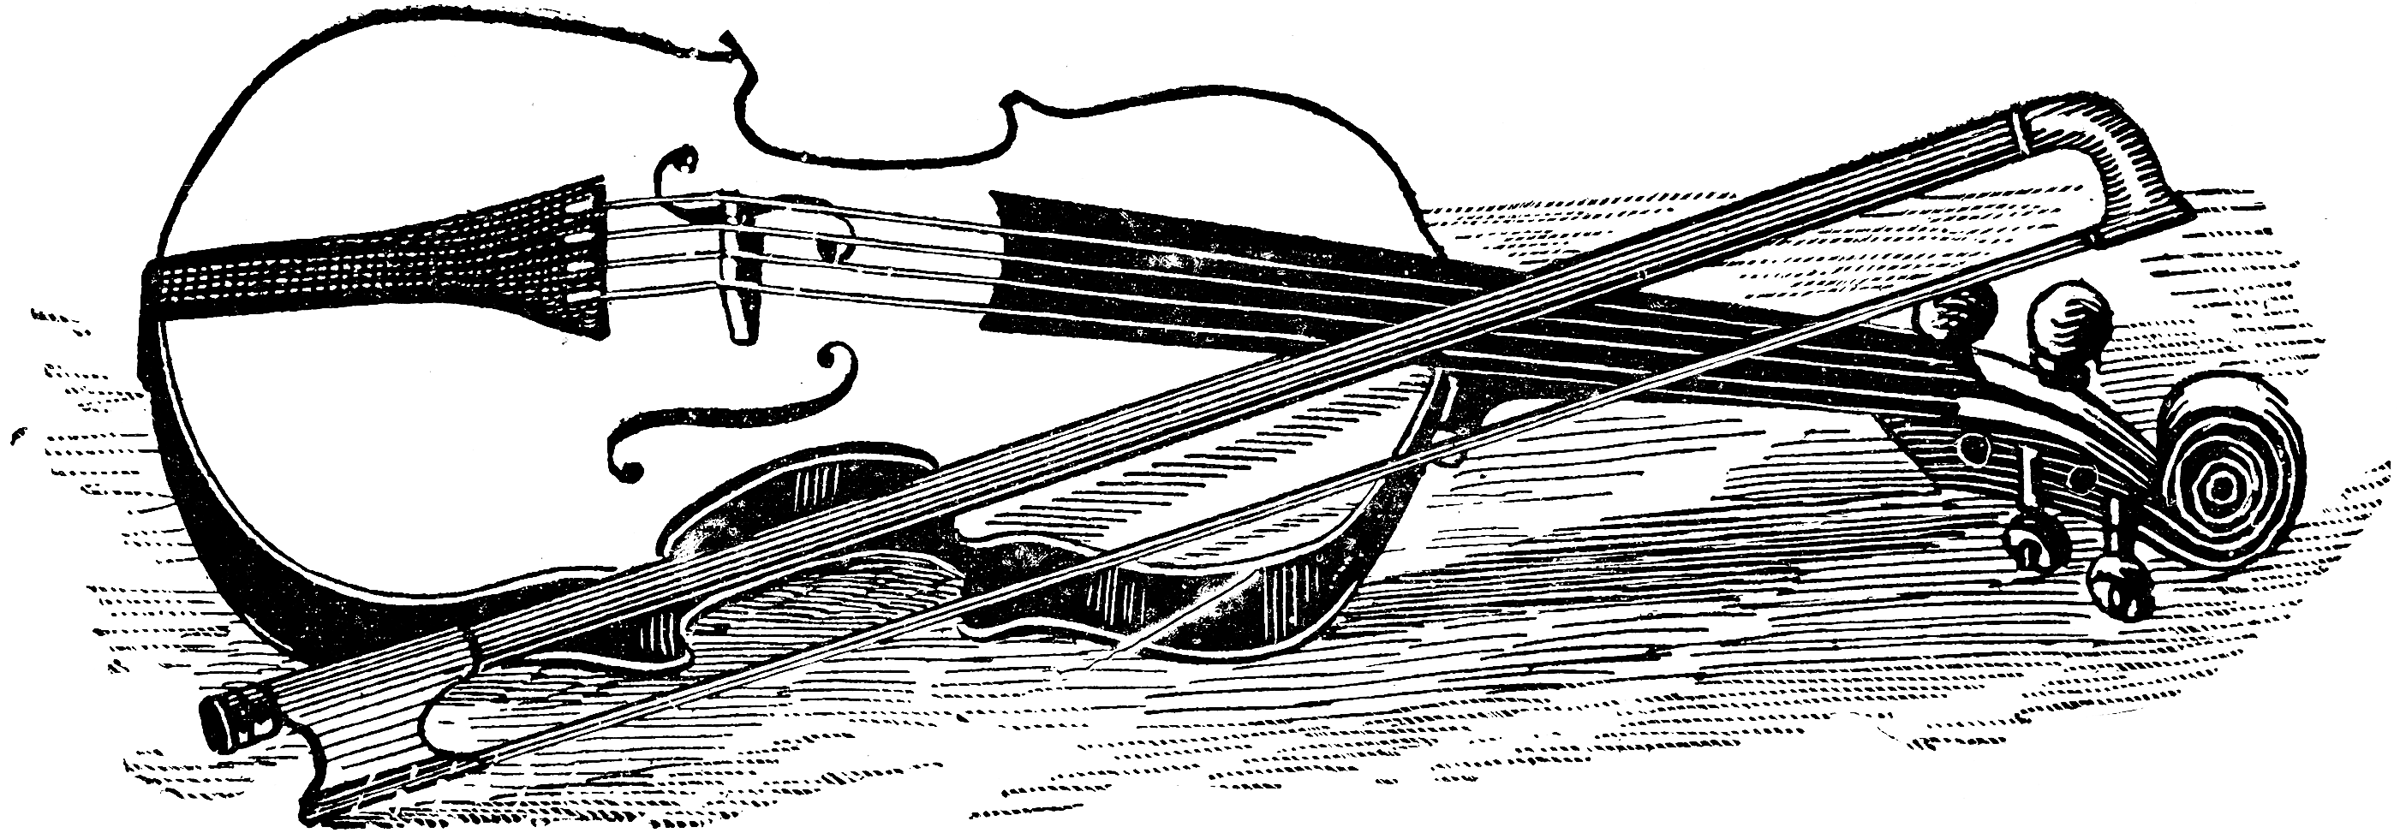 free black and white violin clip art - photo #21